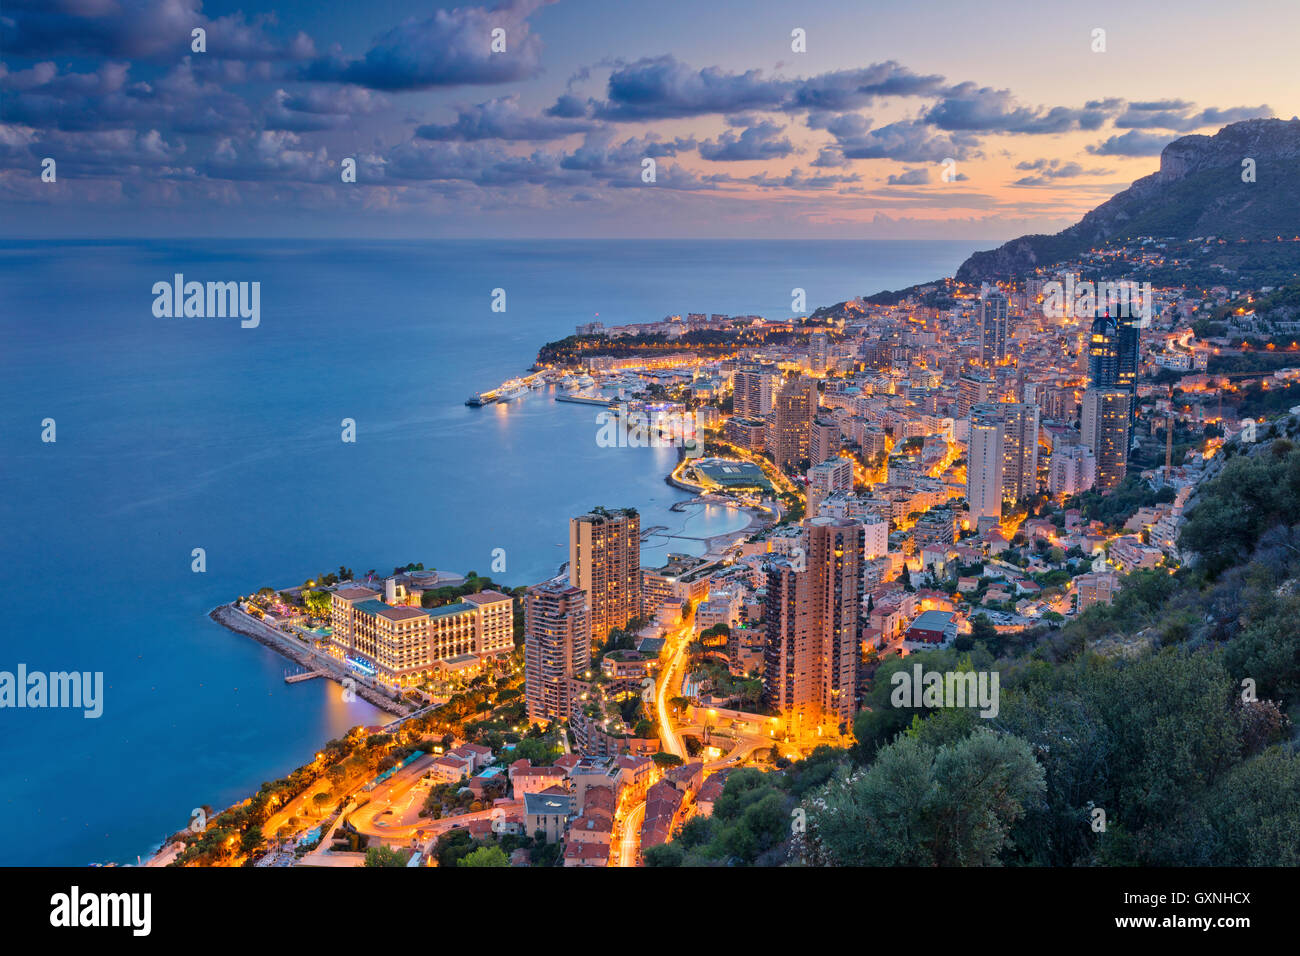 Il Principato di Monaco. Immagine del Monte Carlo, Monaco durante il periodo estivo il tramonto. Foto Stock